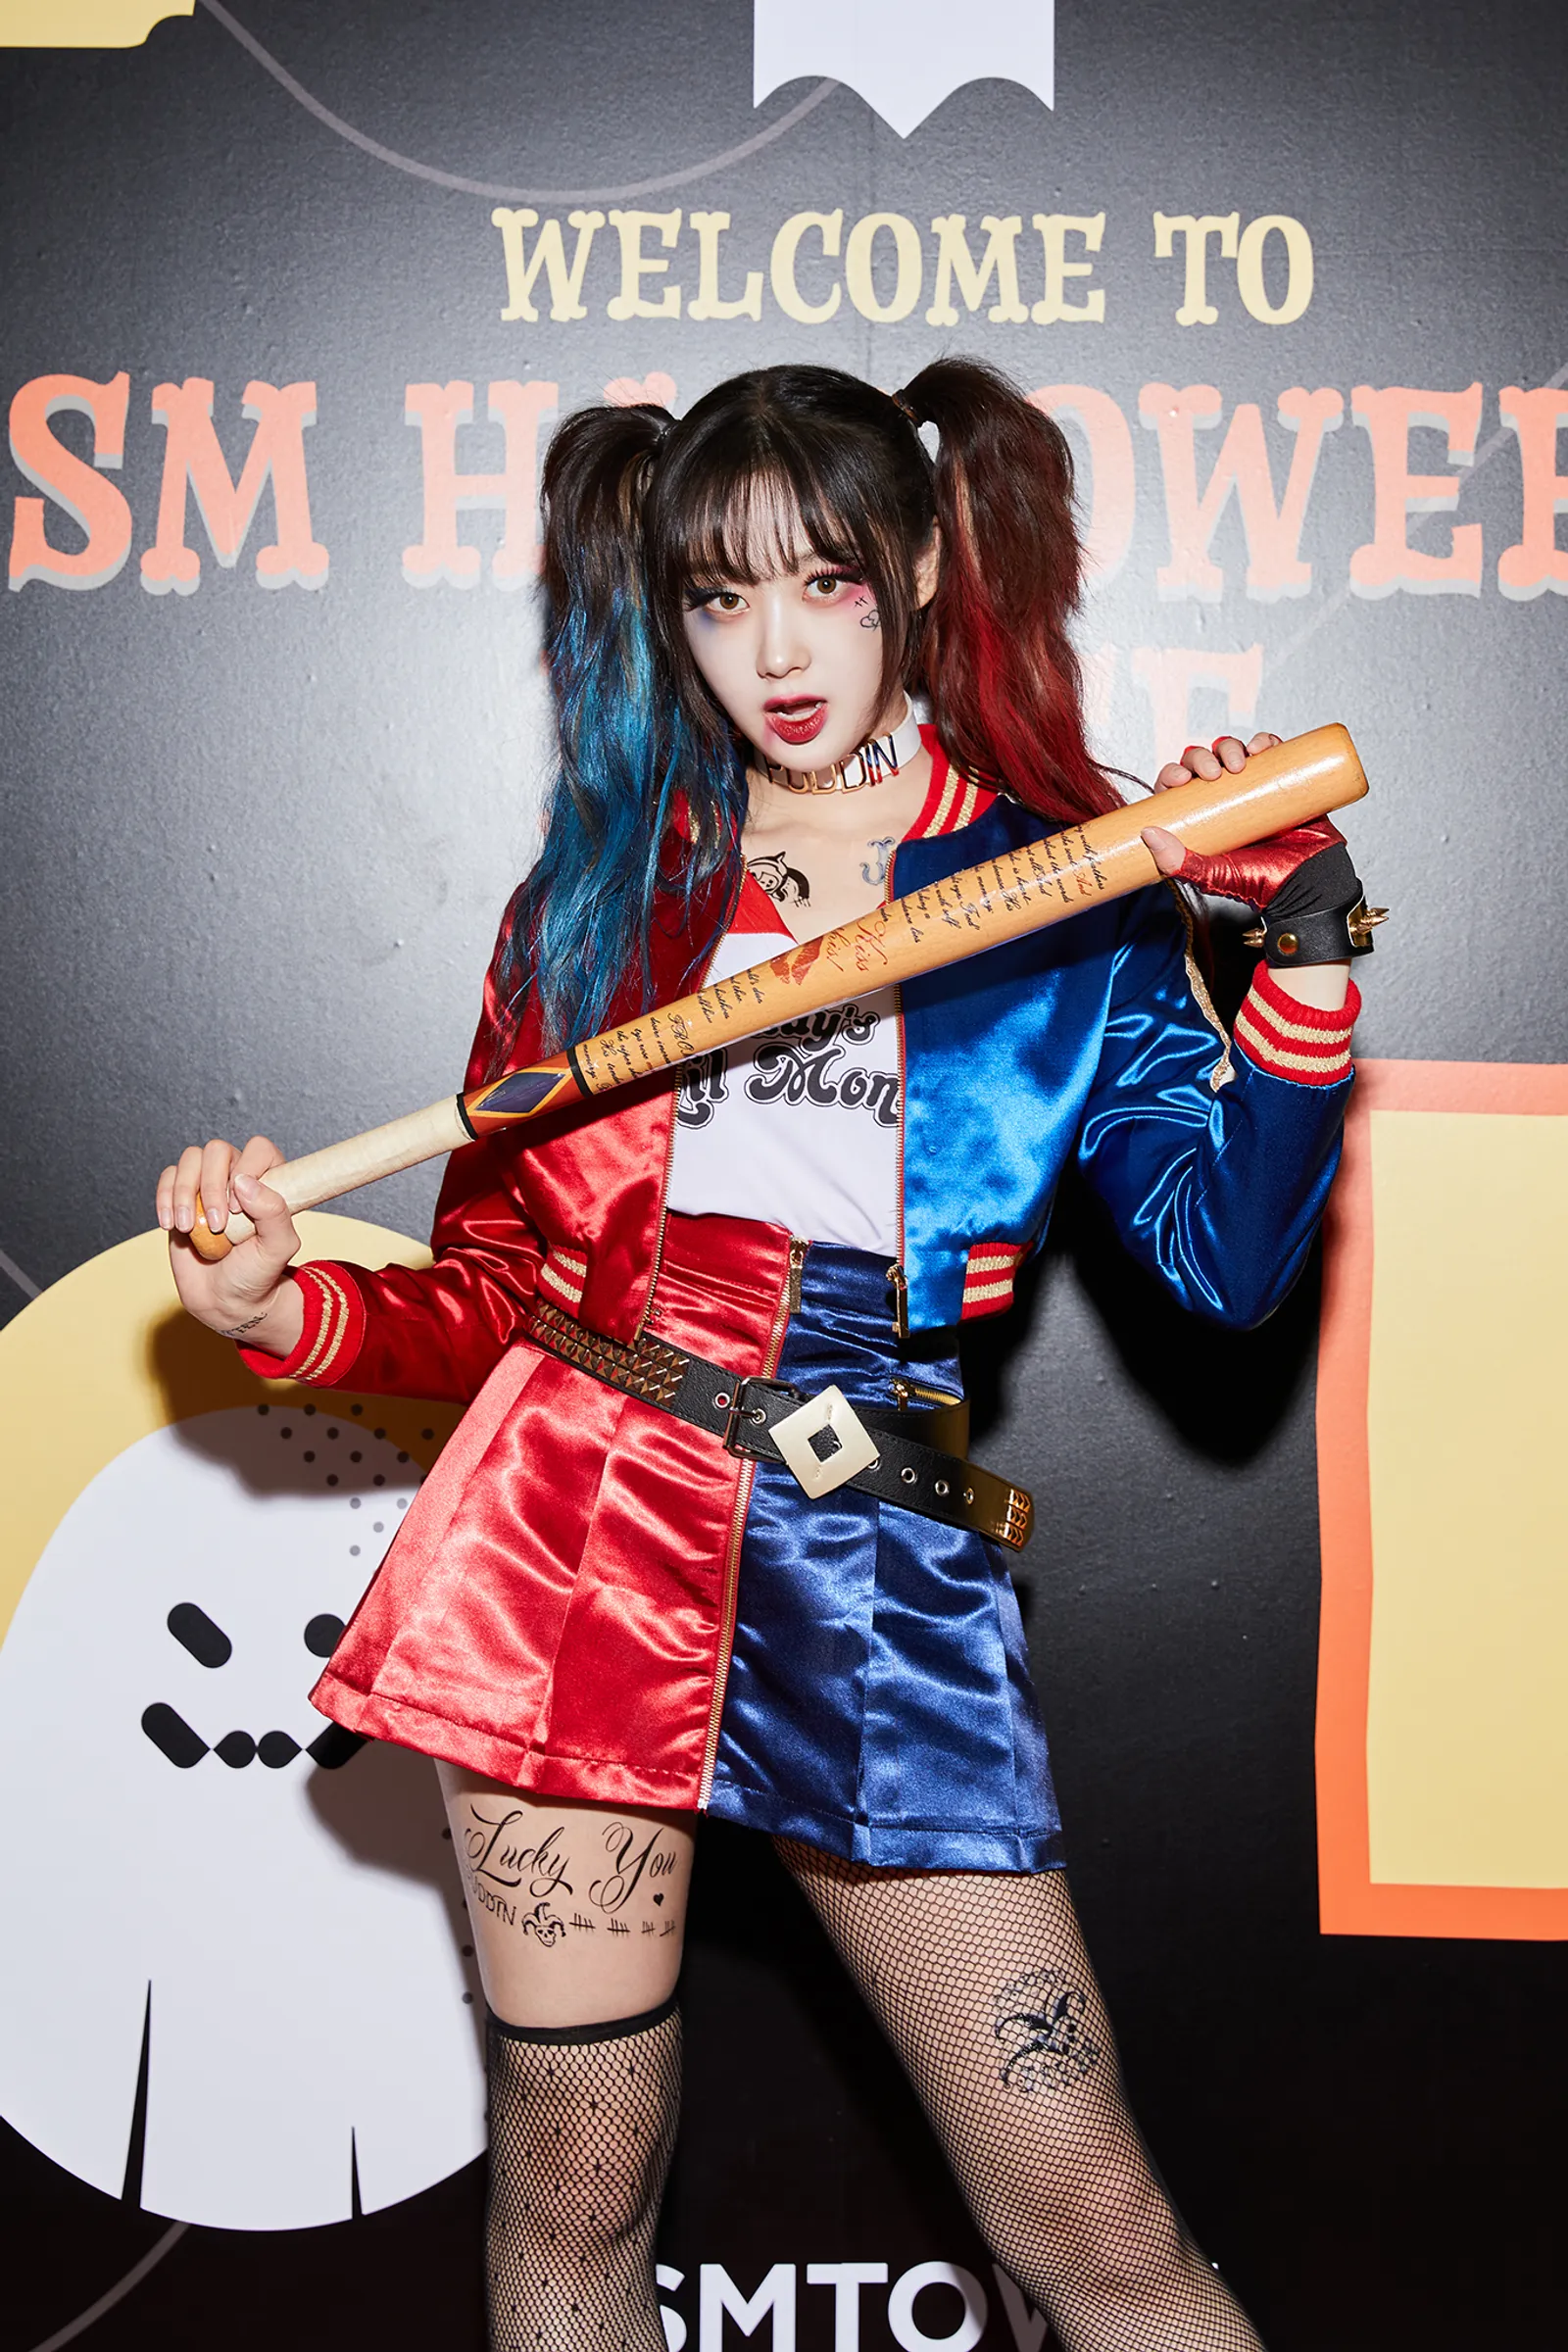 Ini Gaya Idol SM Entertainment saat Rayakan Pesta Halloween